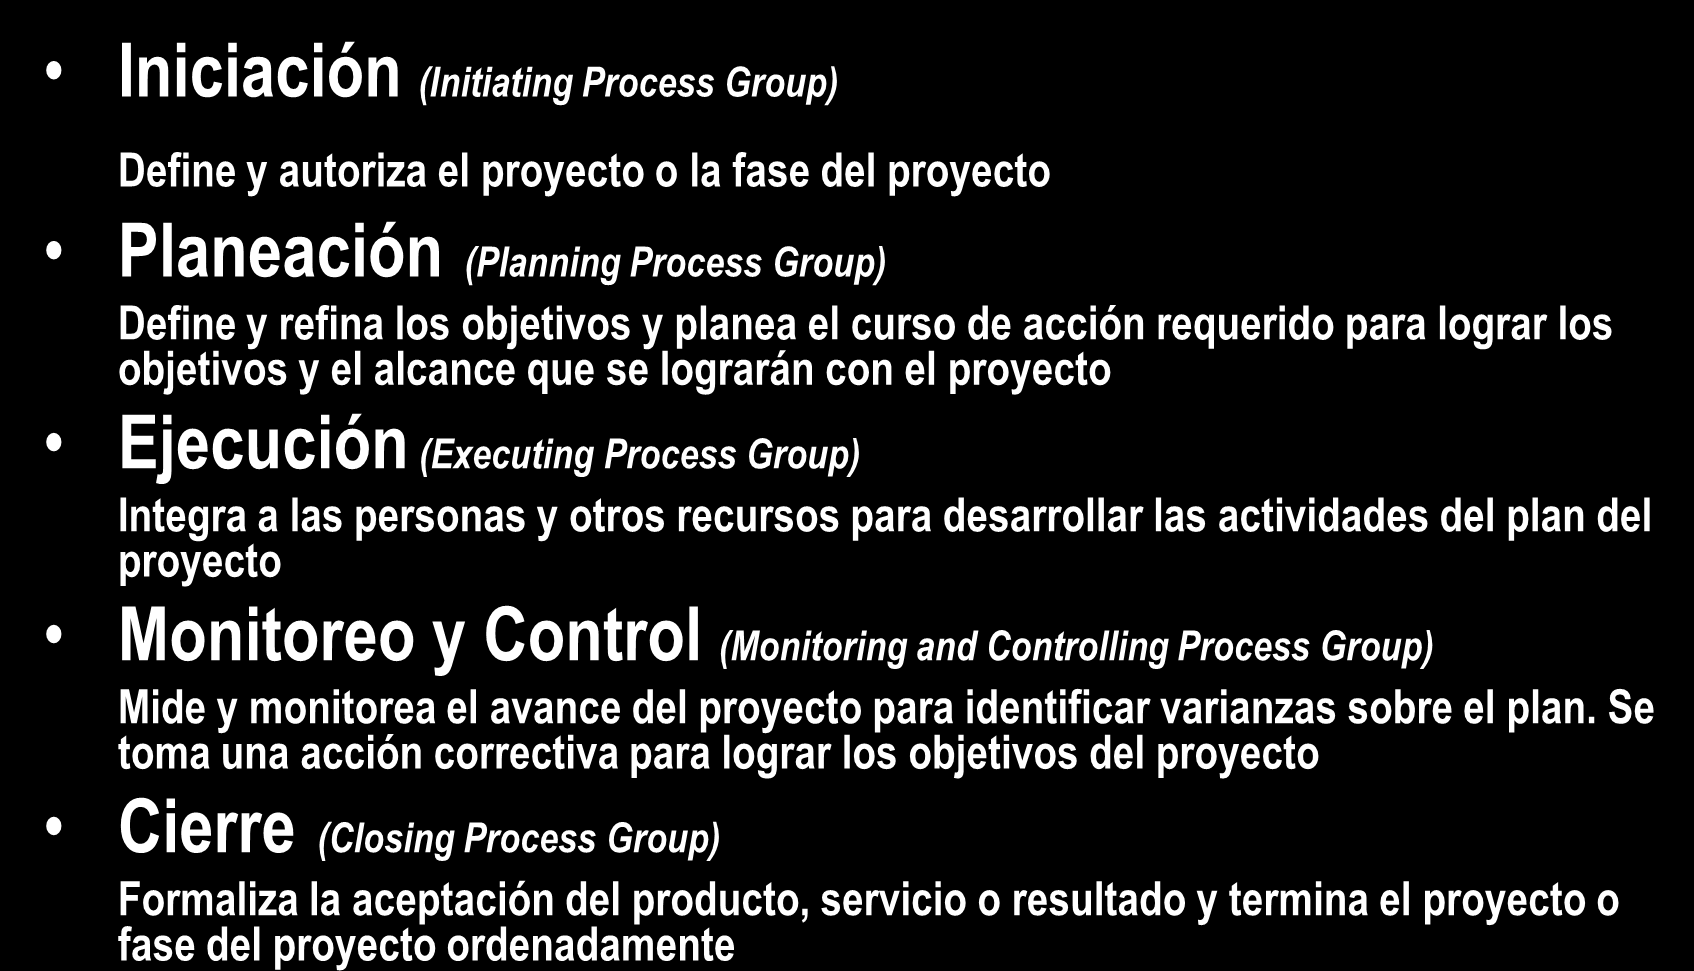 Procesos de la Administración Iniciación (Initiating Process Group) de Proyectos Define y autoriza el proyecto o la fase del proyecto Planeación (Planning Process Group) Define y refina los objetivos